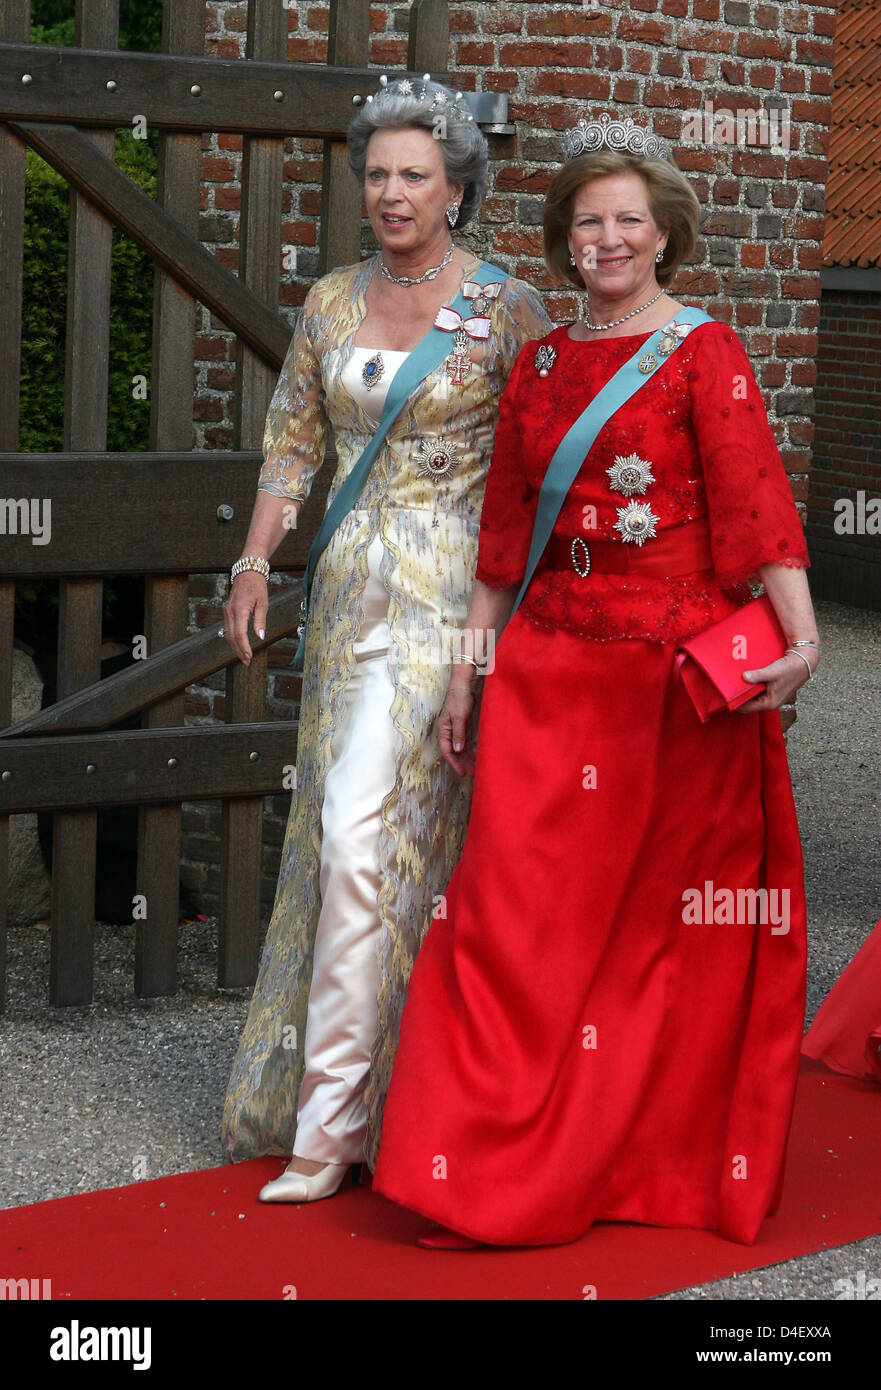 Les sœurs de la Reine Margrethe II du Danemark, la Princesse Benedikte (L) et Anne-Marie (R) quittent l'église après le mariage du Prince Joachim et Marie Cavallier dans Mogeltonder, Danemark, 24 mai 2008. Photo : Albert Philip van der Werf (Pays-Bas) Banque D'Images